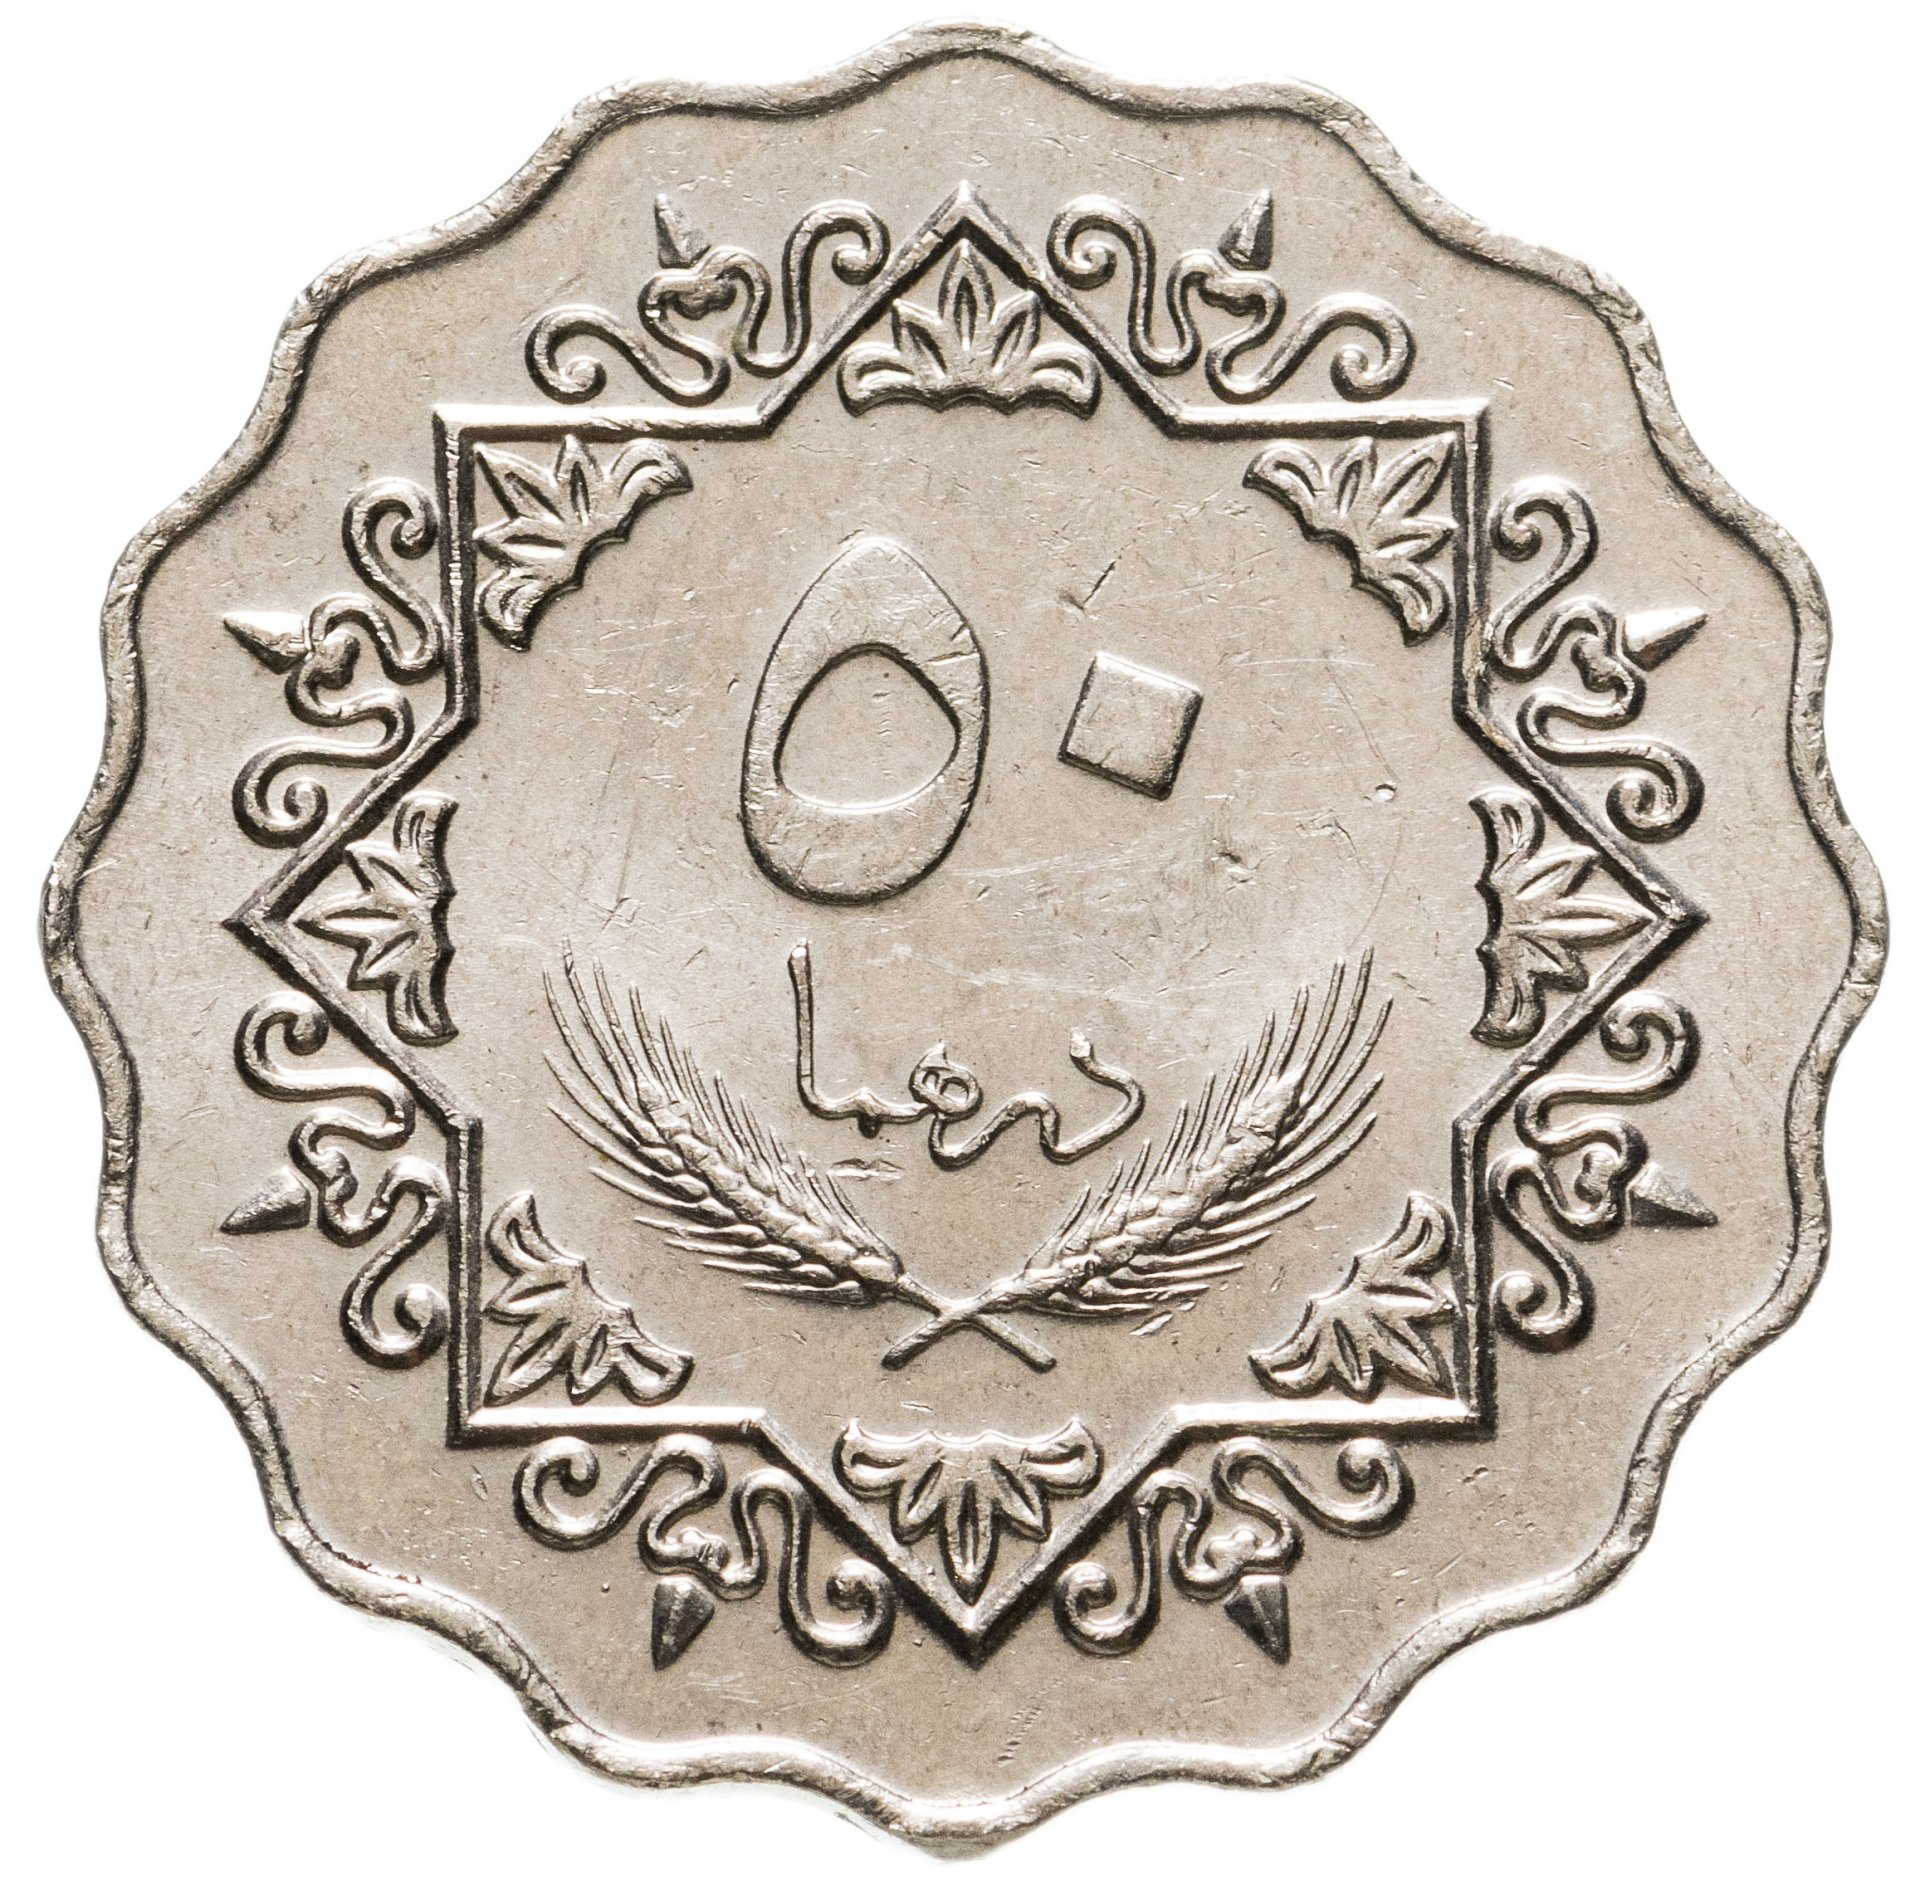 13 дирхам. Ливия 50 дирхамов 1979. Монета с арабской вязью 50. Монеты ливийской Джамахирии. Старинные арабские монеты.